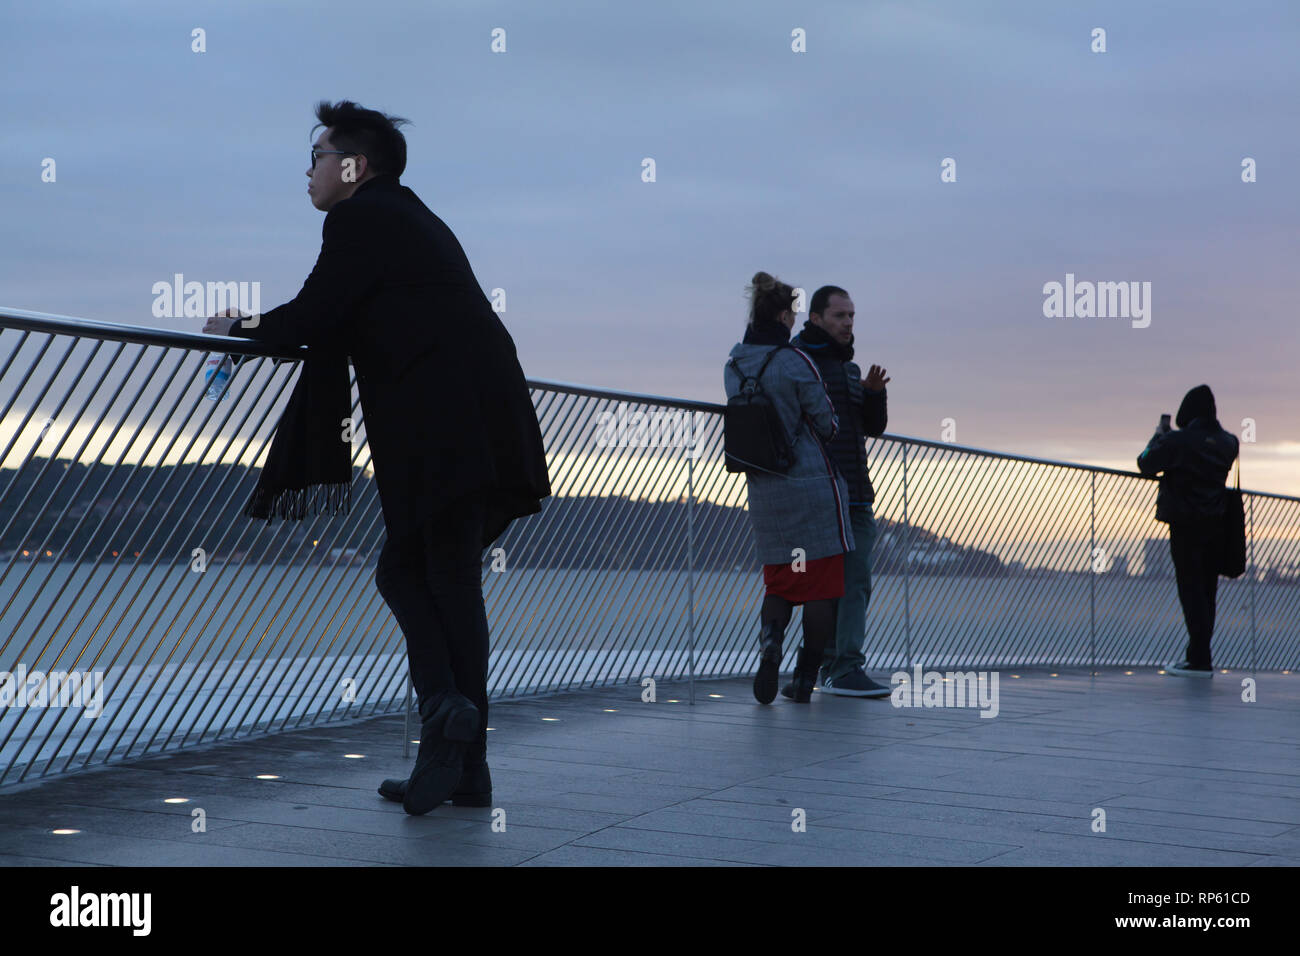 Persone Godetevi il tramonto sulla terrazza sul tetto del Museo di Arte, Architettura e Tecnologia (Maat) progettata dall'architetto britannico Amanda Levete (2016) sulla banca del fiume Tago nel quartiere Belém a Lisbona, Portogallo. Foto Stock